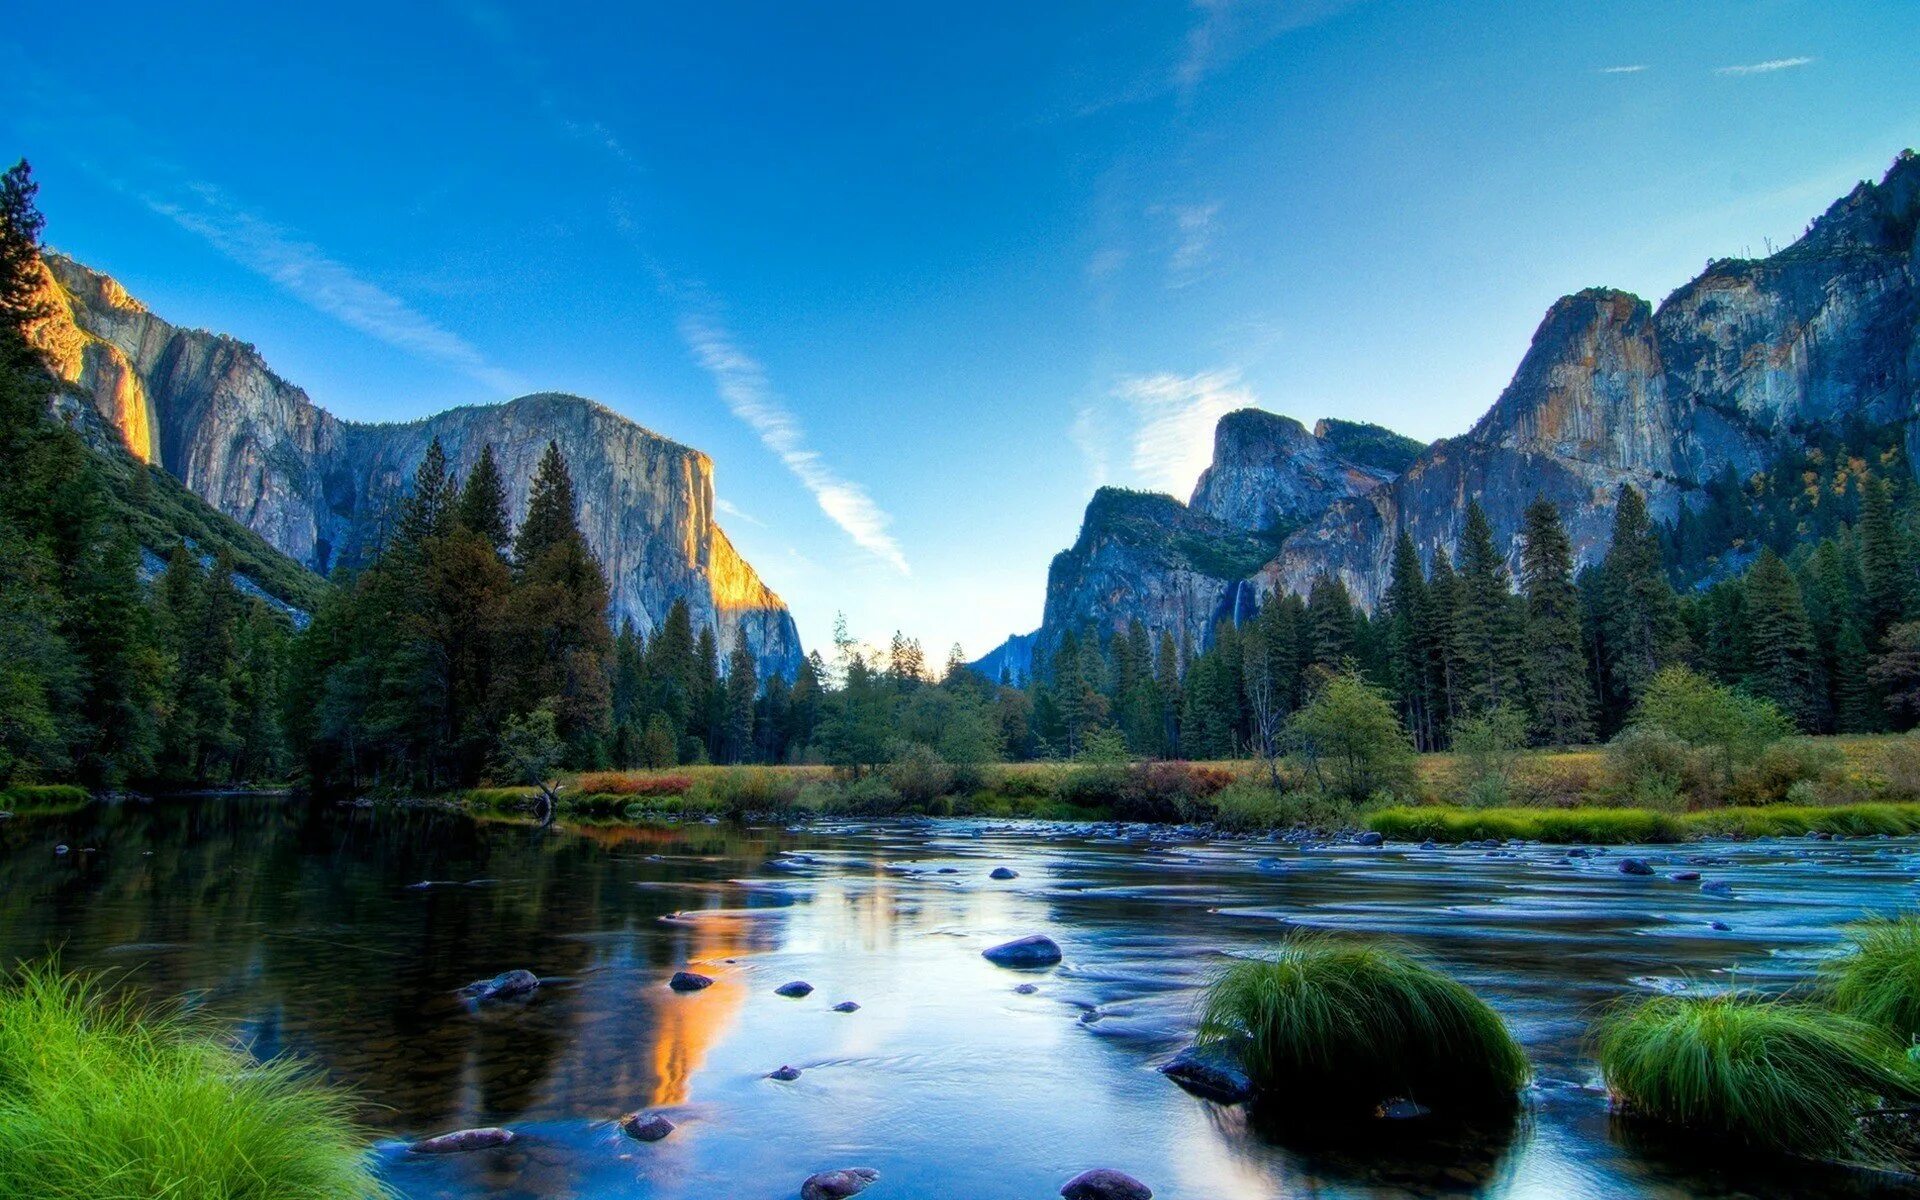 Установить на экране природу. Йосемити национальный парк. Долина Йосемити, США. Горы озеро Yosemite National Park. Йосемити национальный парк прозрачное озеро.